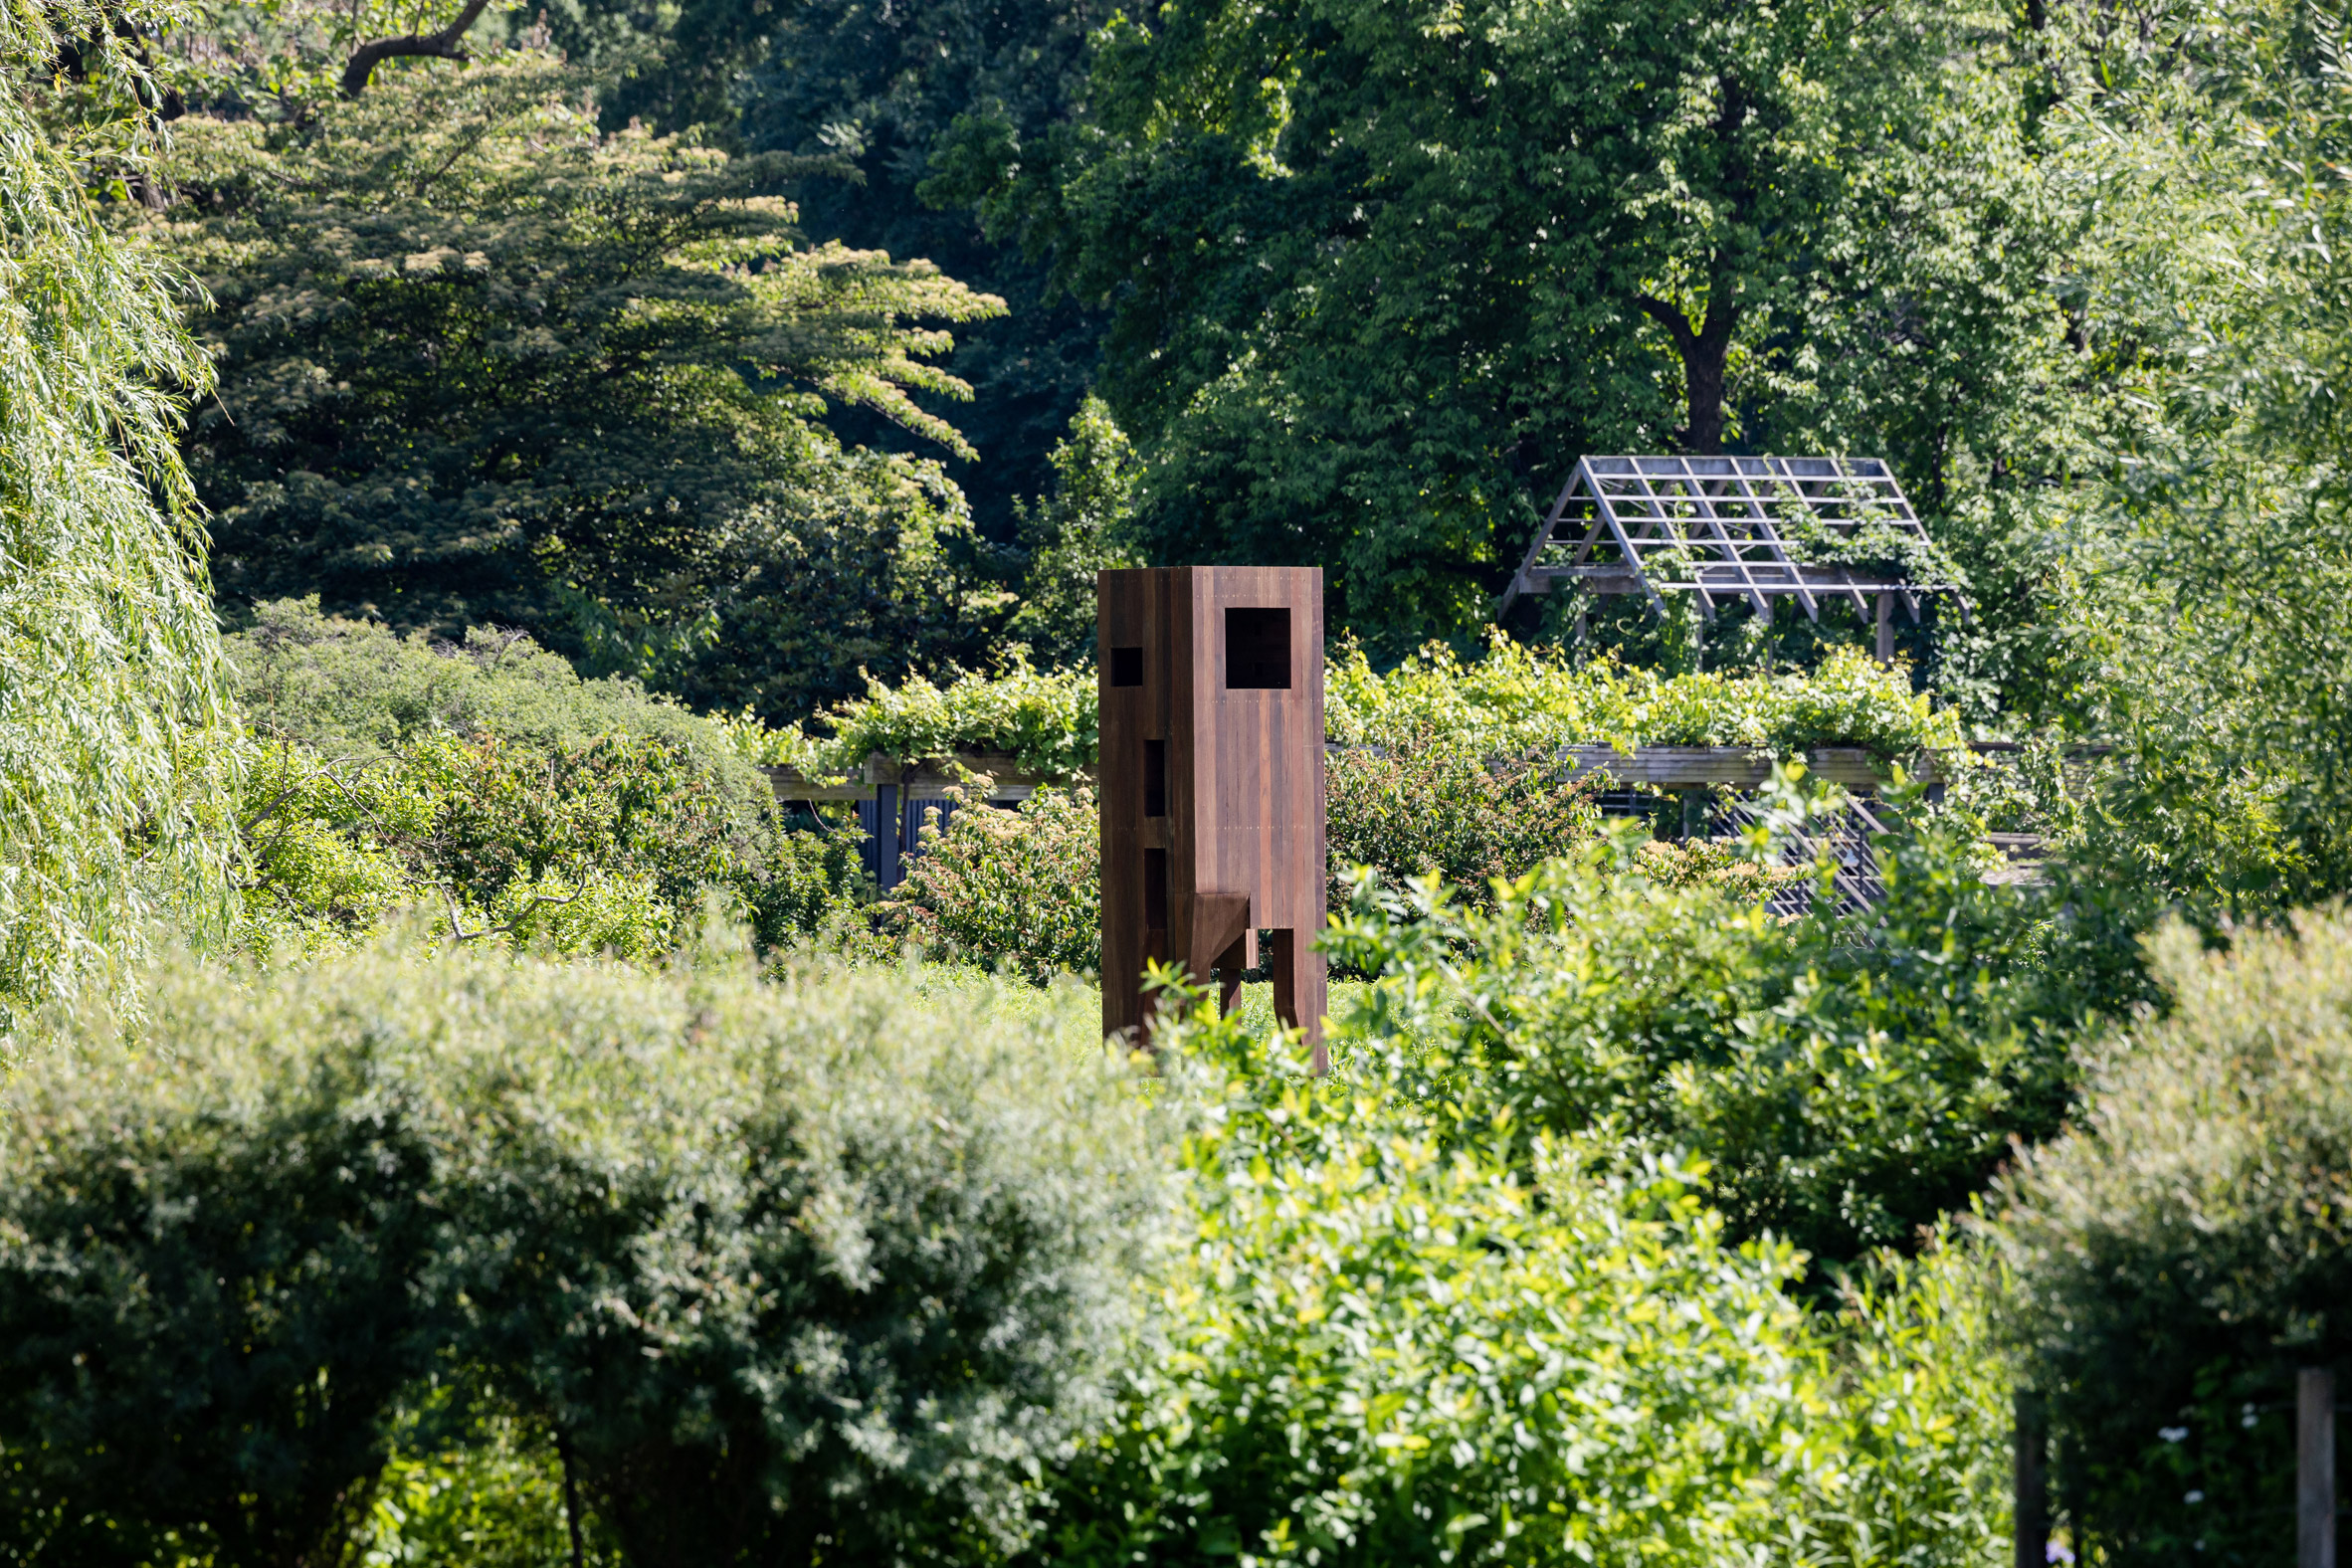 Brooklyn Botanic Garden birdhouses